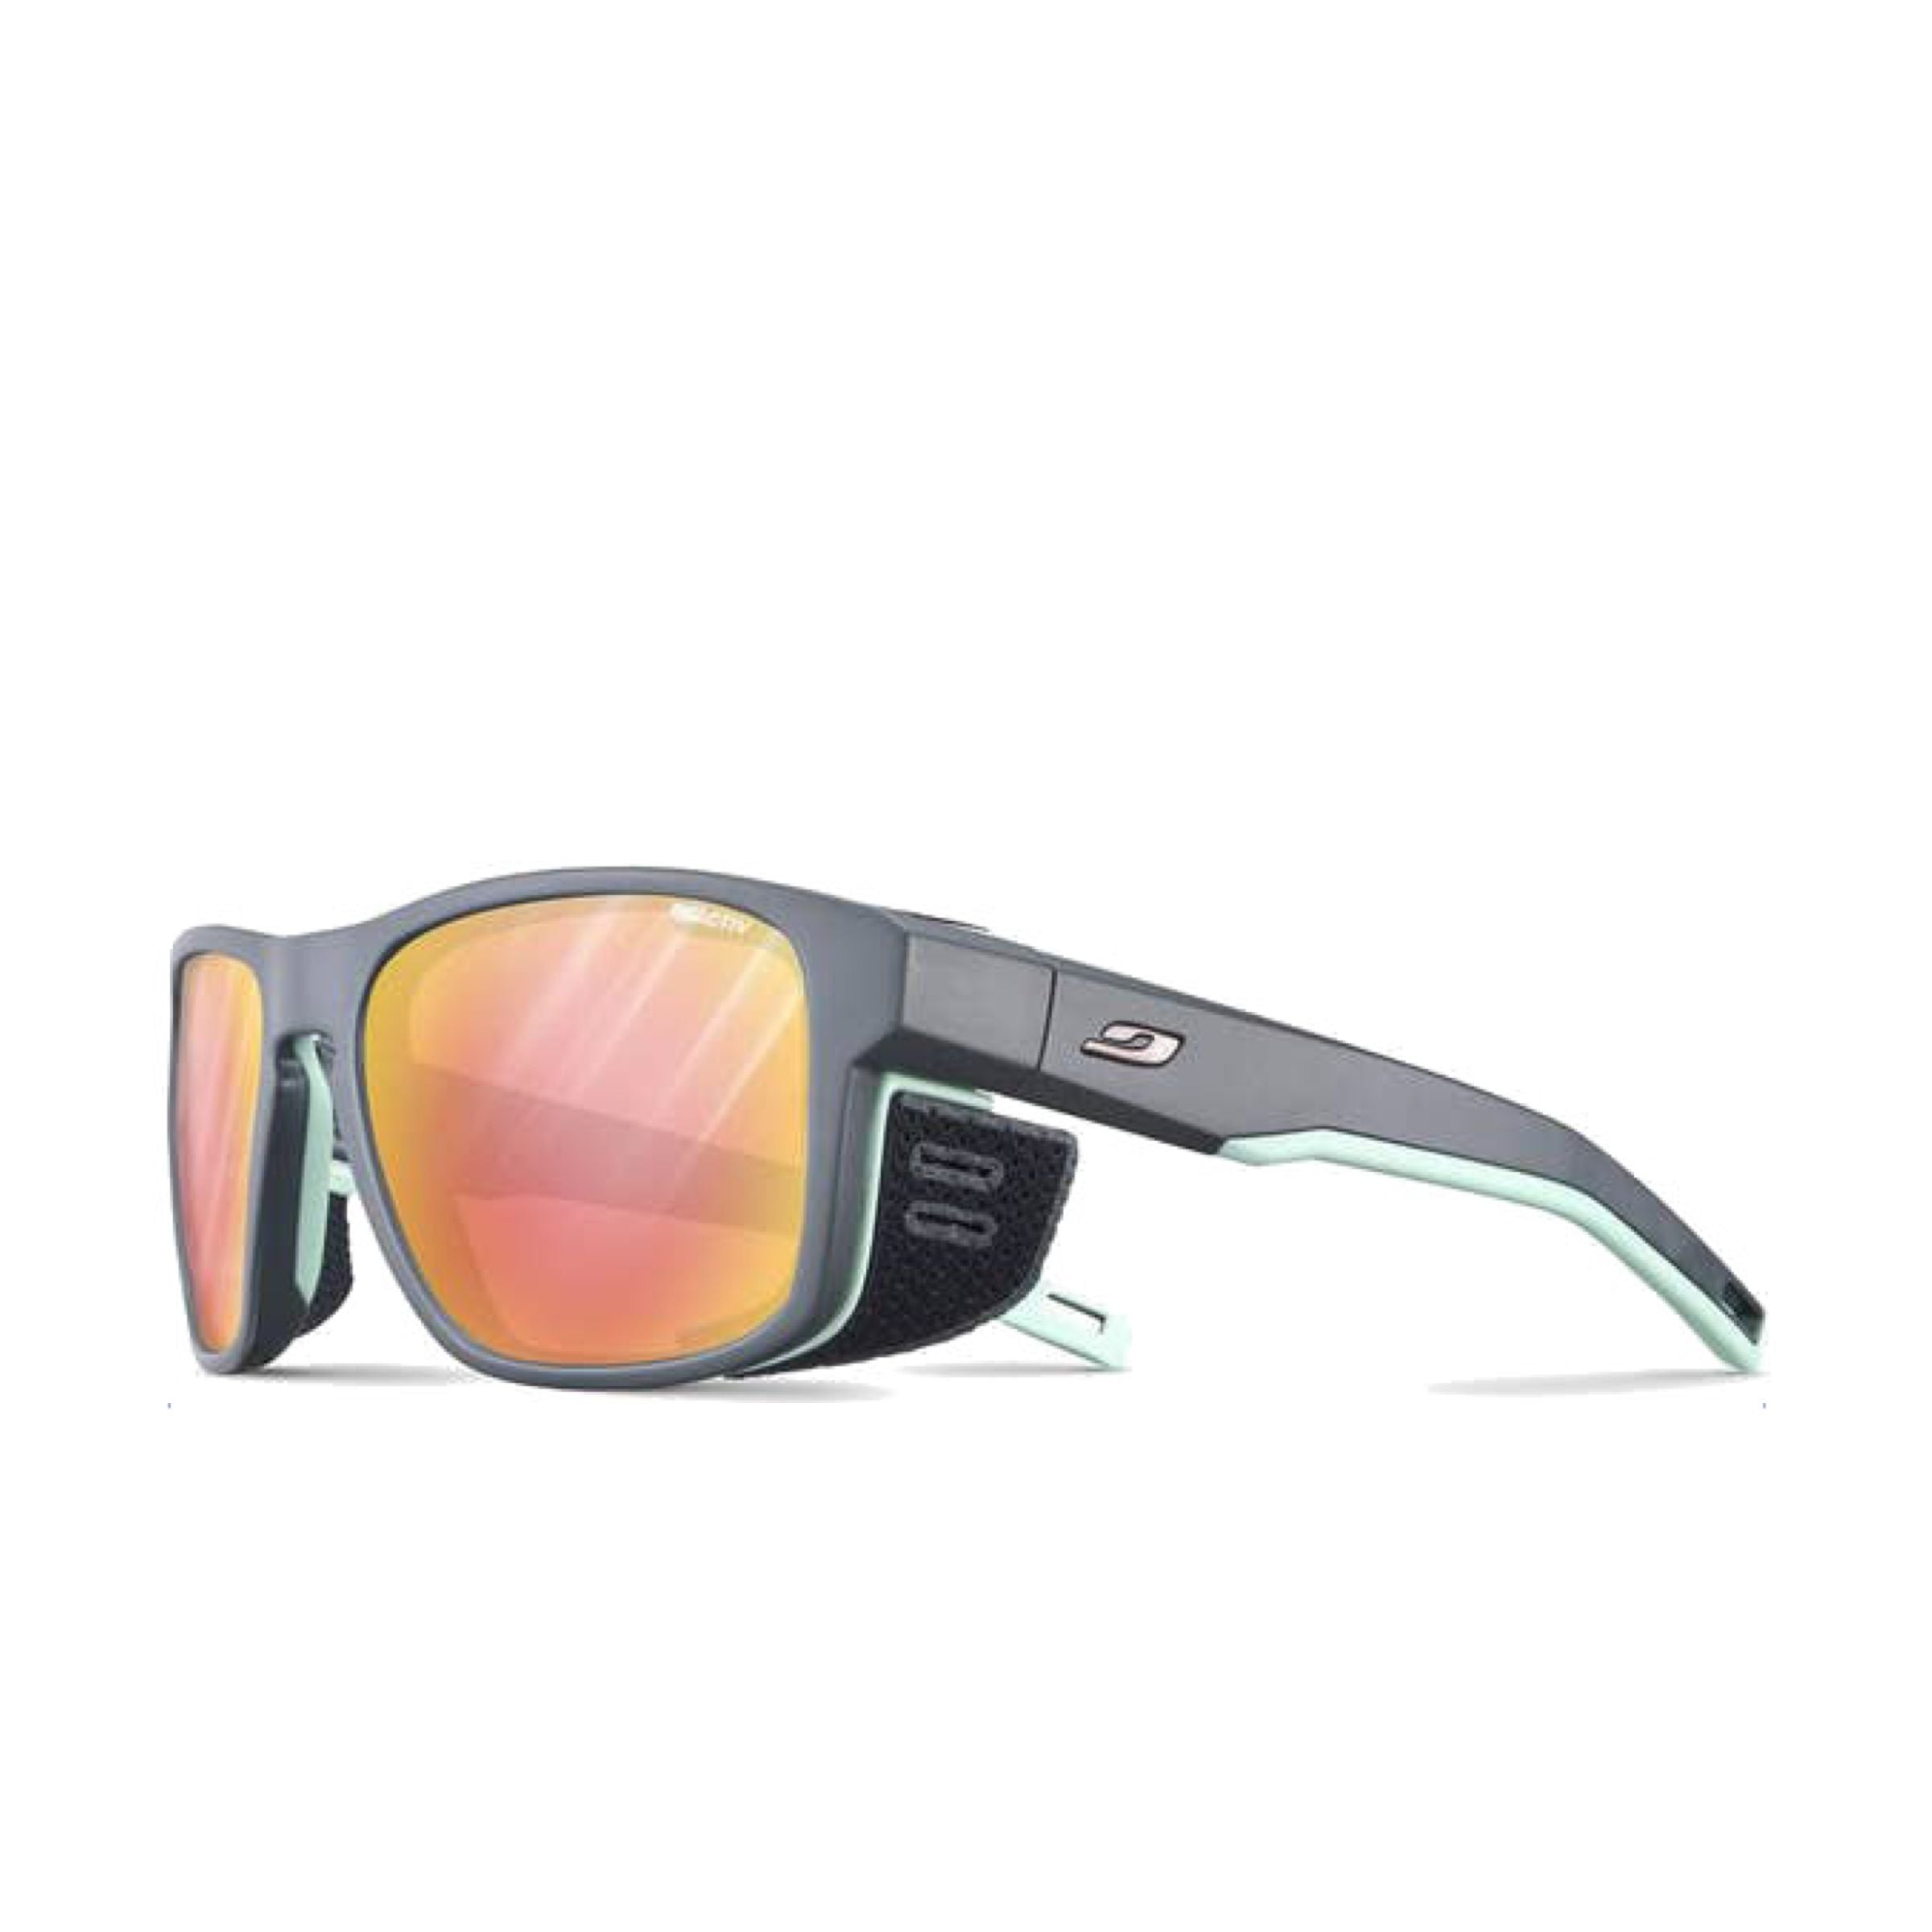 Shield M Reactive 2-3 Glare Control Grigio/Verde Sun Glasses Grey 